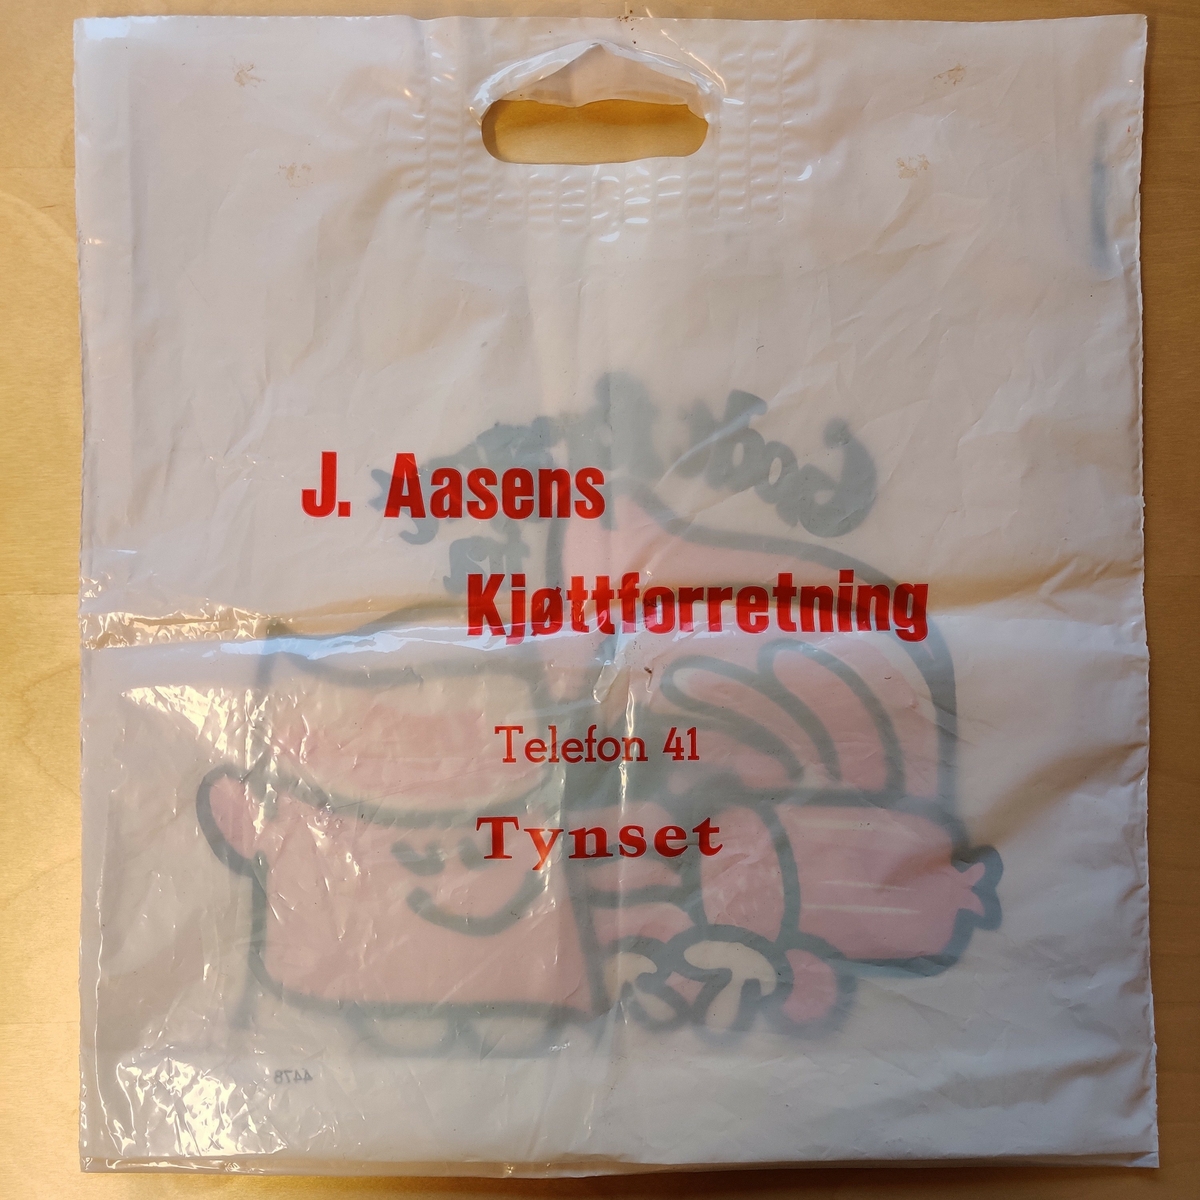 Plastpose fra J. Aasens kjøttforretning på Tynset.